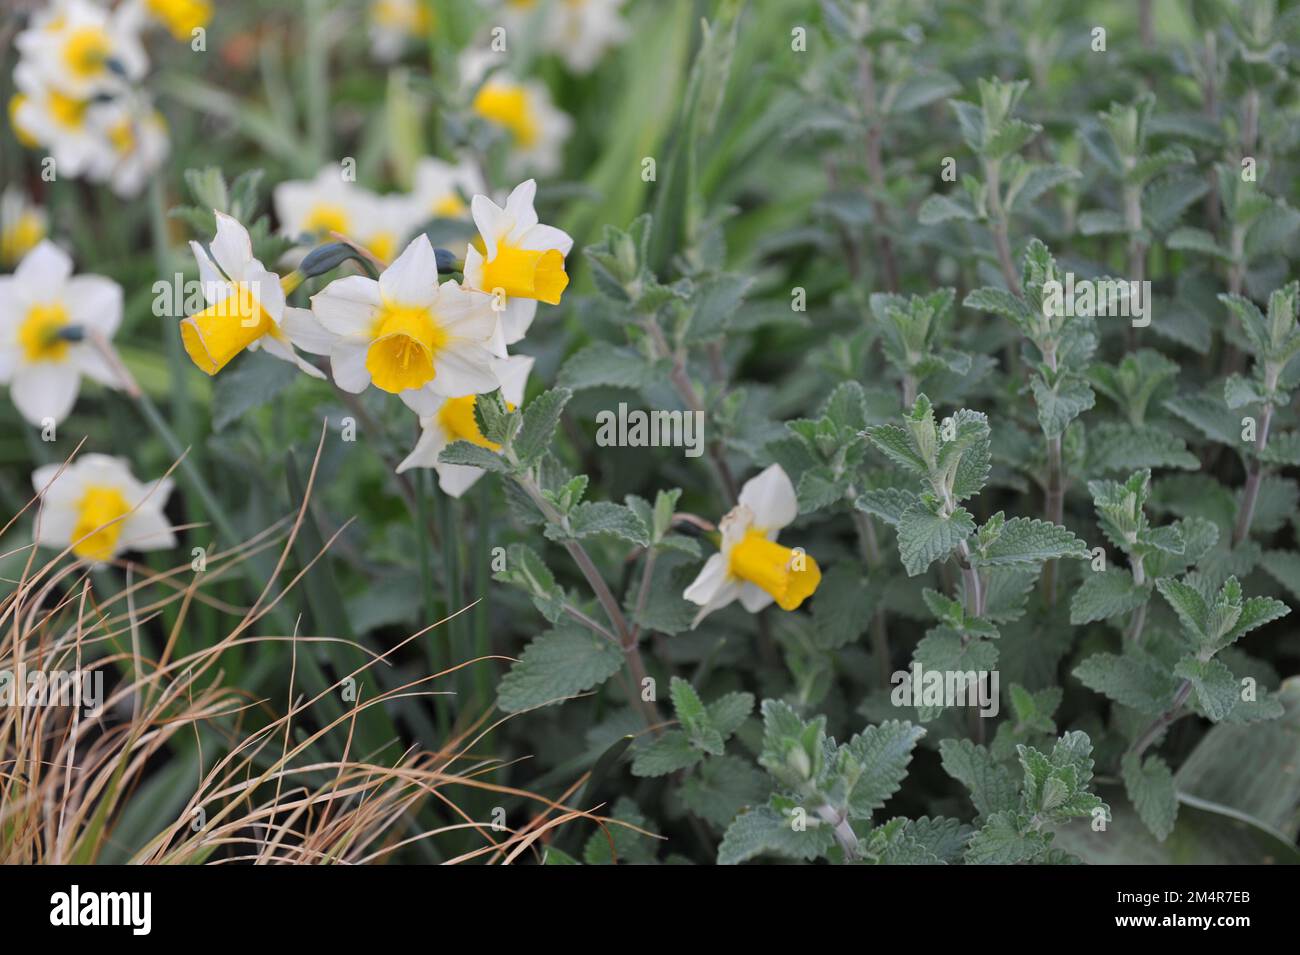 Giallo e bianco Jonquilla e Apodanthus narcisi (Narcissus) l'eco d'oro fiorisce in un giardino a maggio Foto Stock